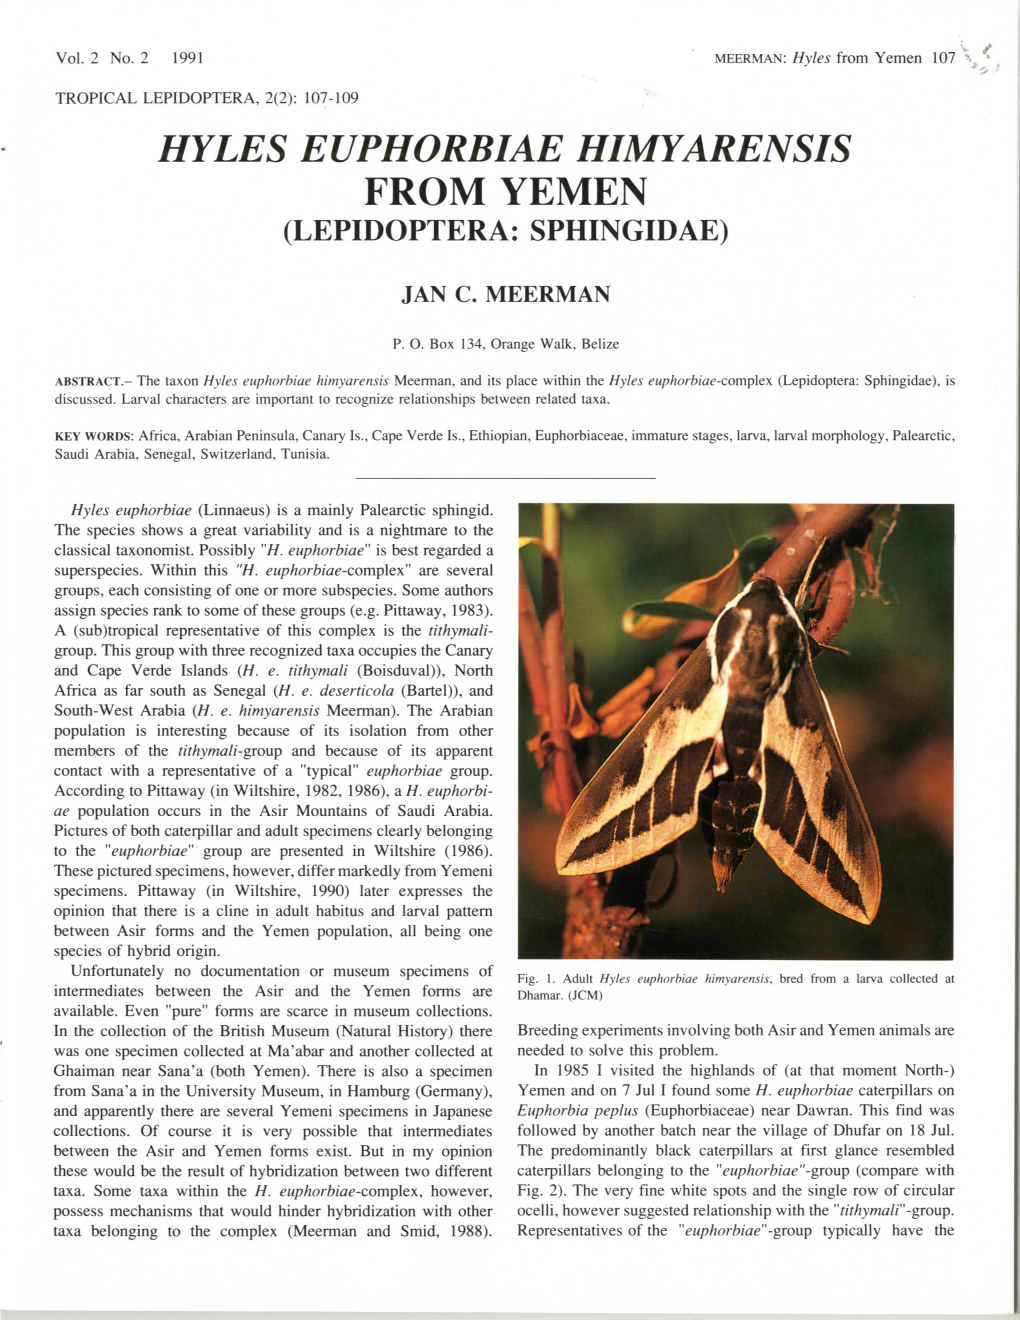 Hyles Euphorbiae Himyarensis from Yemen (Lepidoptera: Sphingidae)